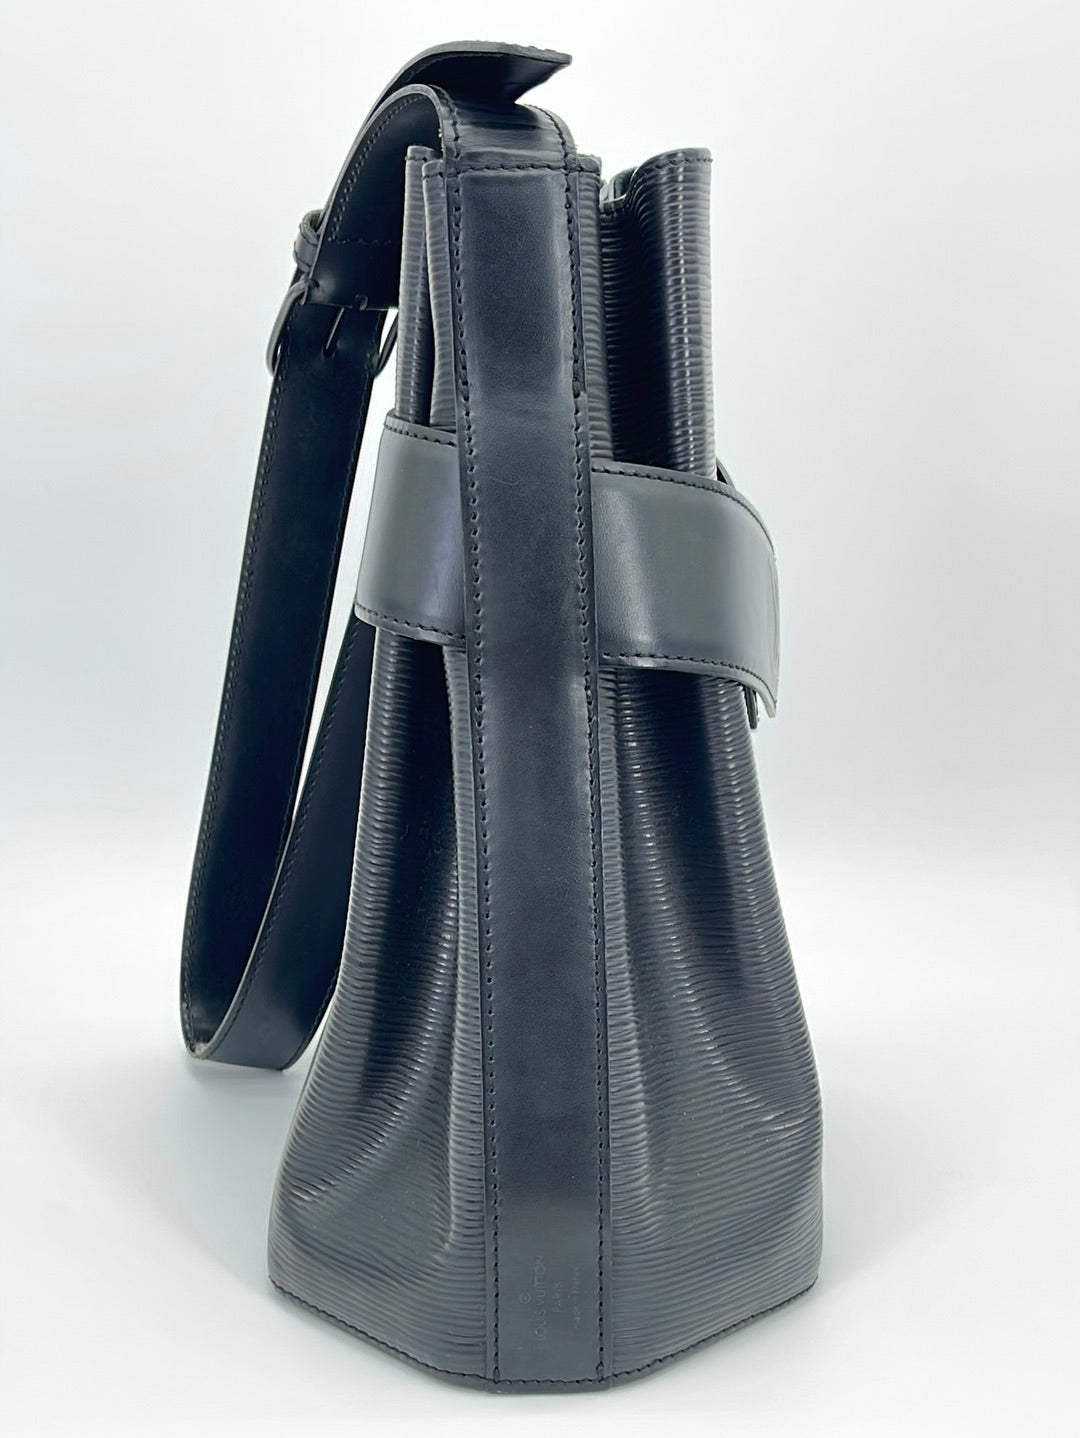 Louis Vuitton Sac D'epaule Twist Bucket Hobo Noir with Pouch 869137 Black  Leather Shoulder Bag, Louis Vuitton